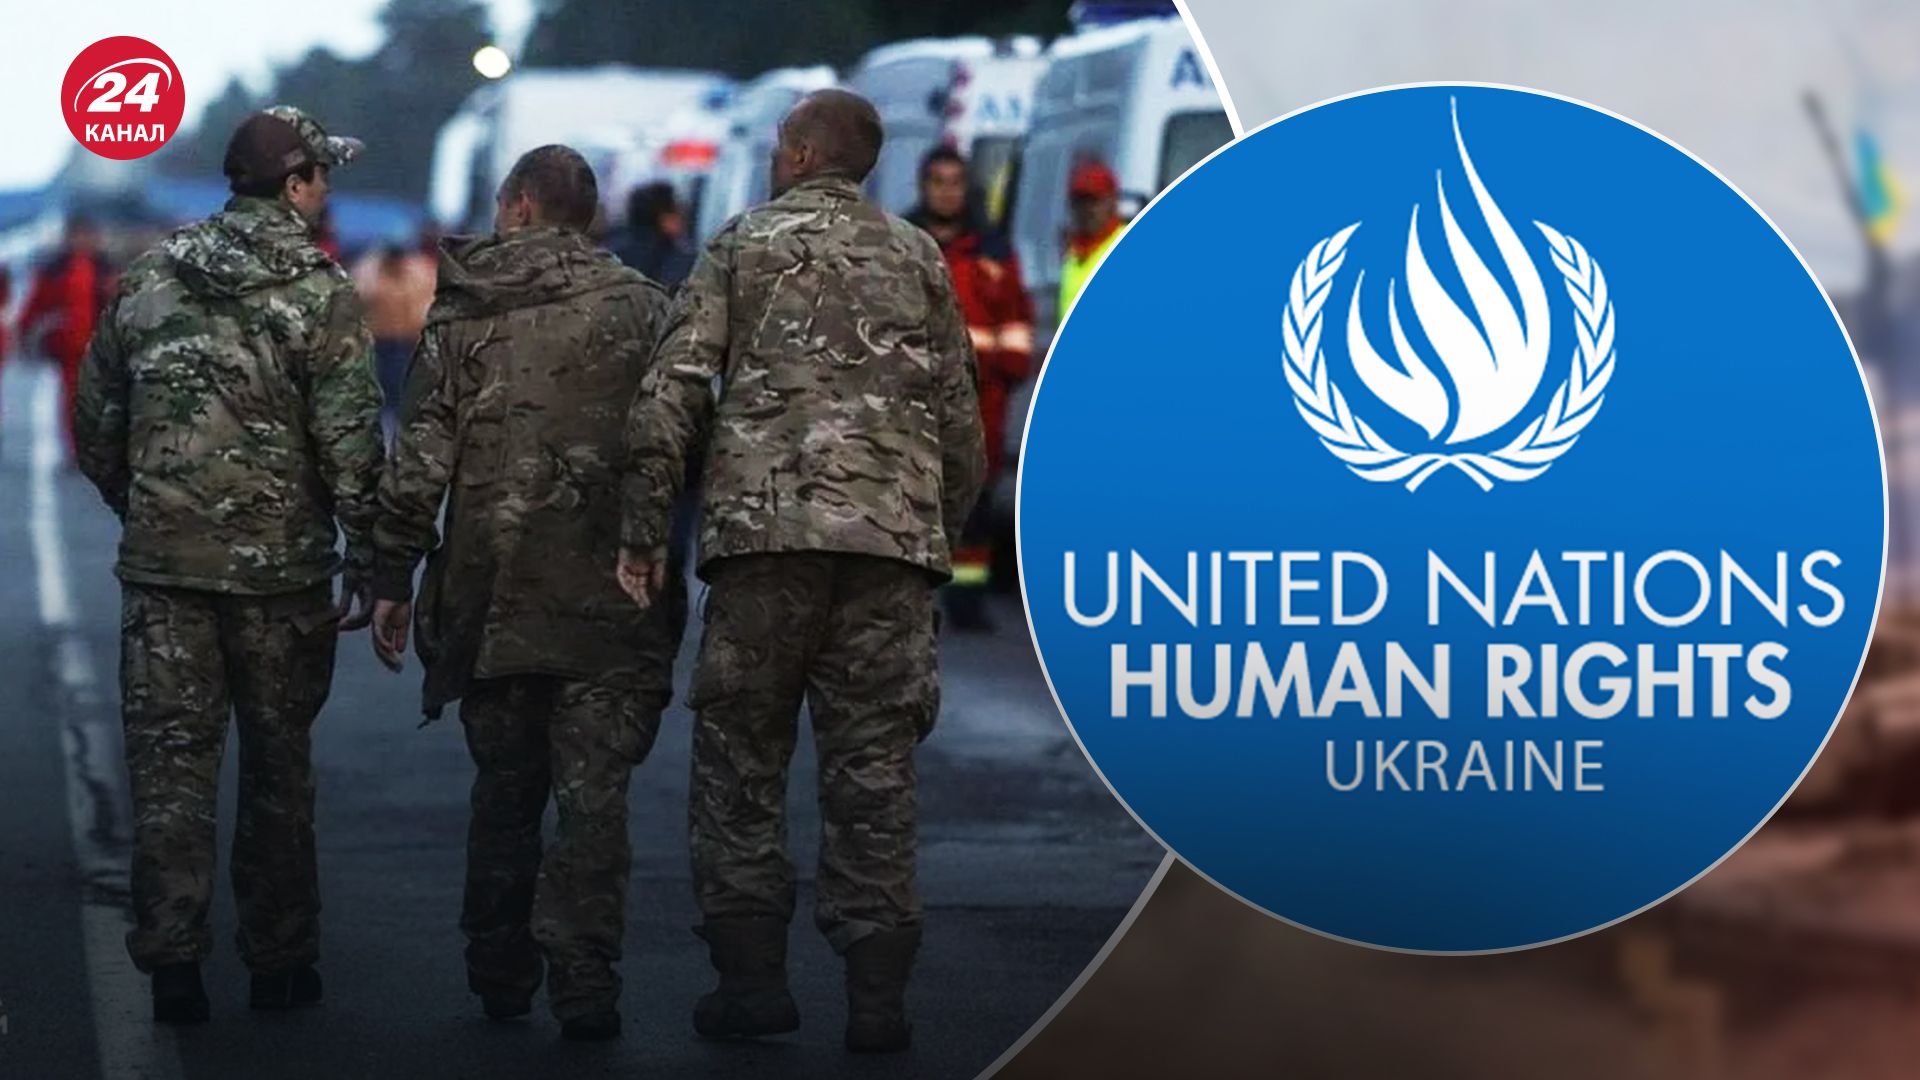 Місія ООН нарахувала 32 страти українських військовополонених росіянами за одну зиму